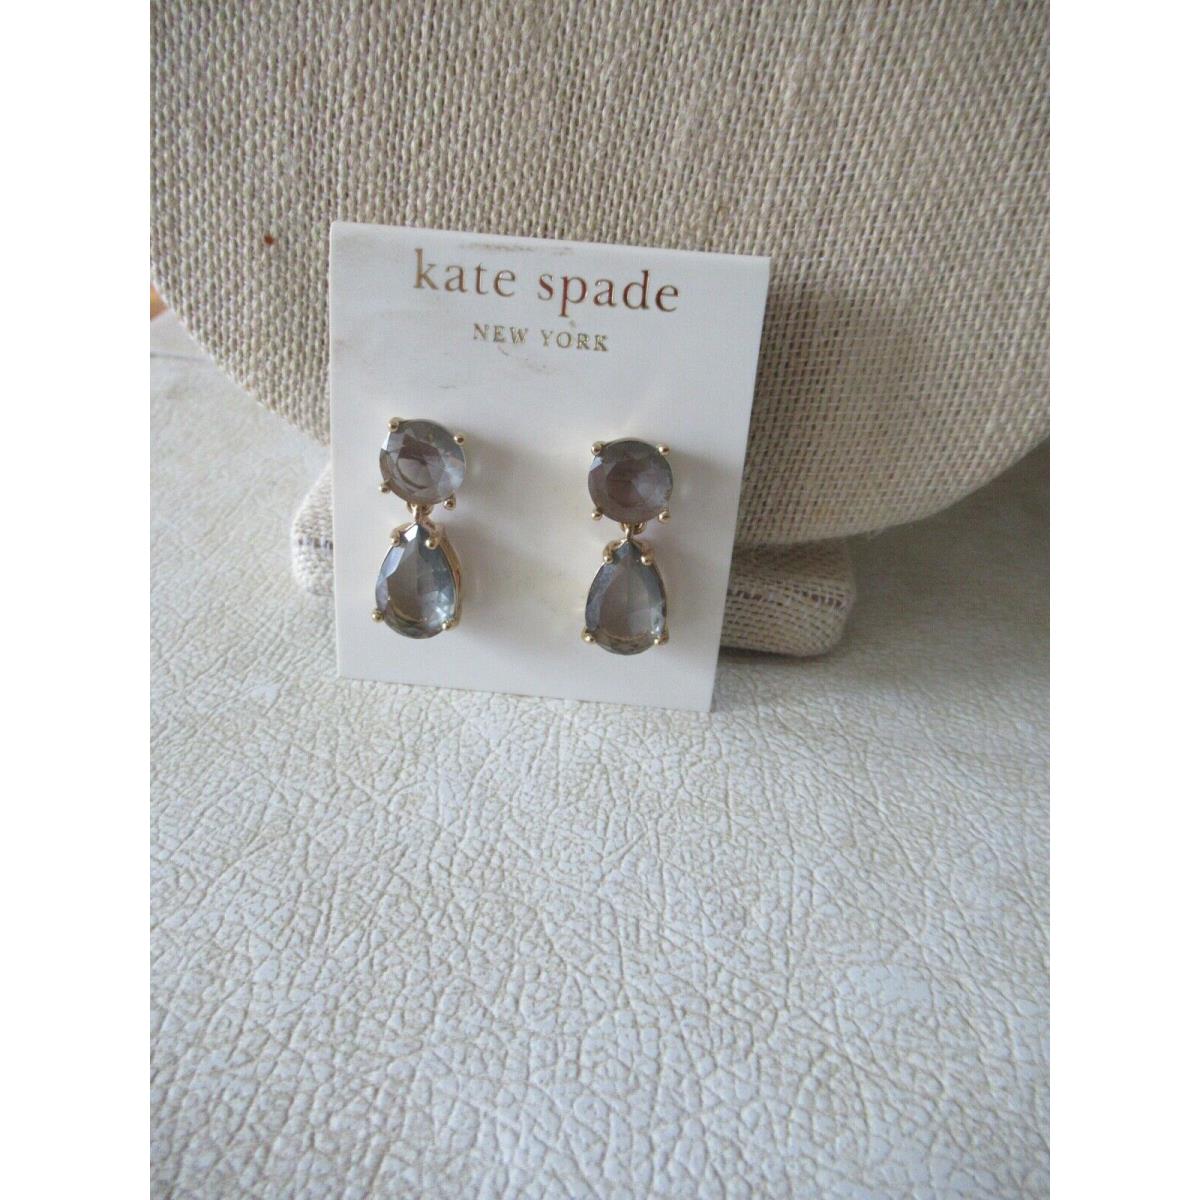 Kate Spade Plaza Athenee Drop Earrings -gray Stones/ Raised Prong Settings